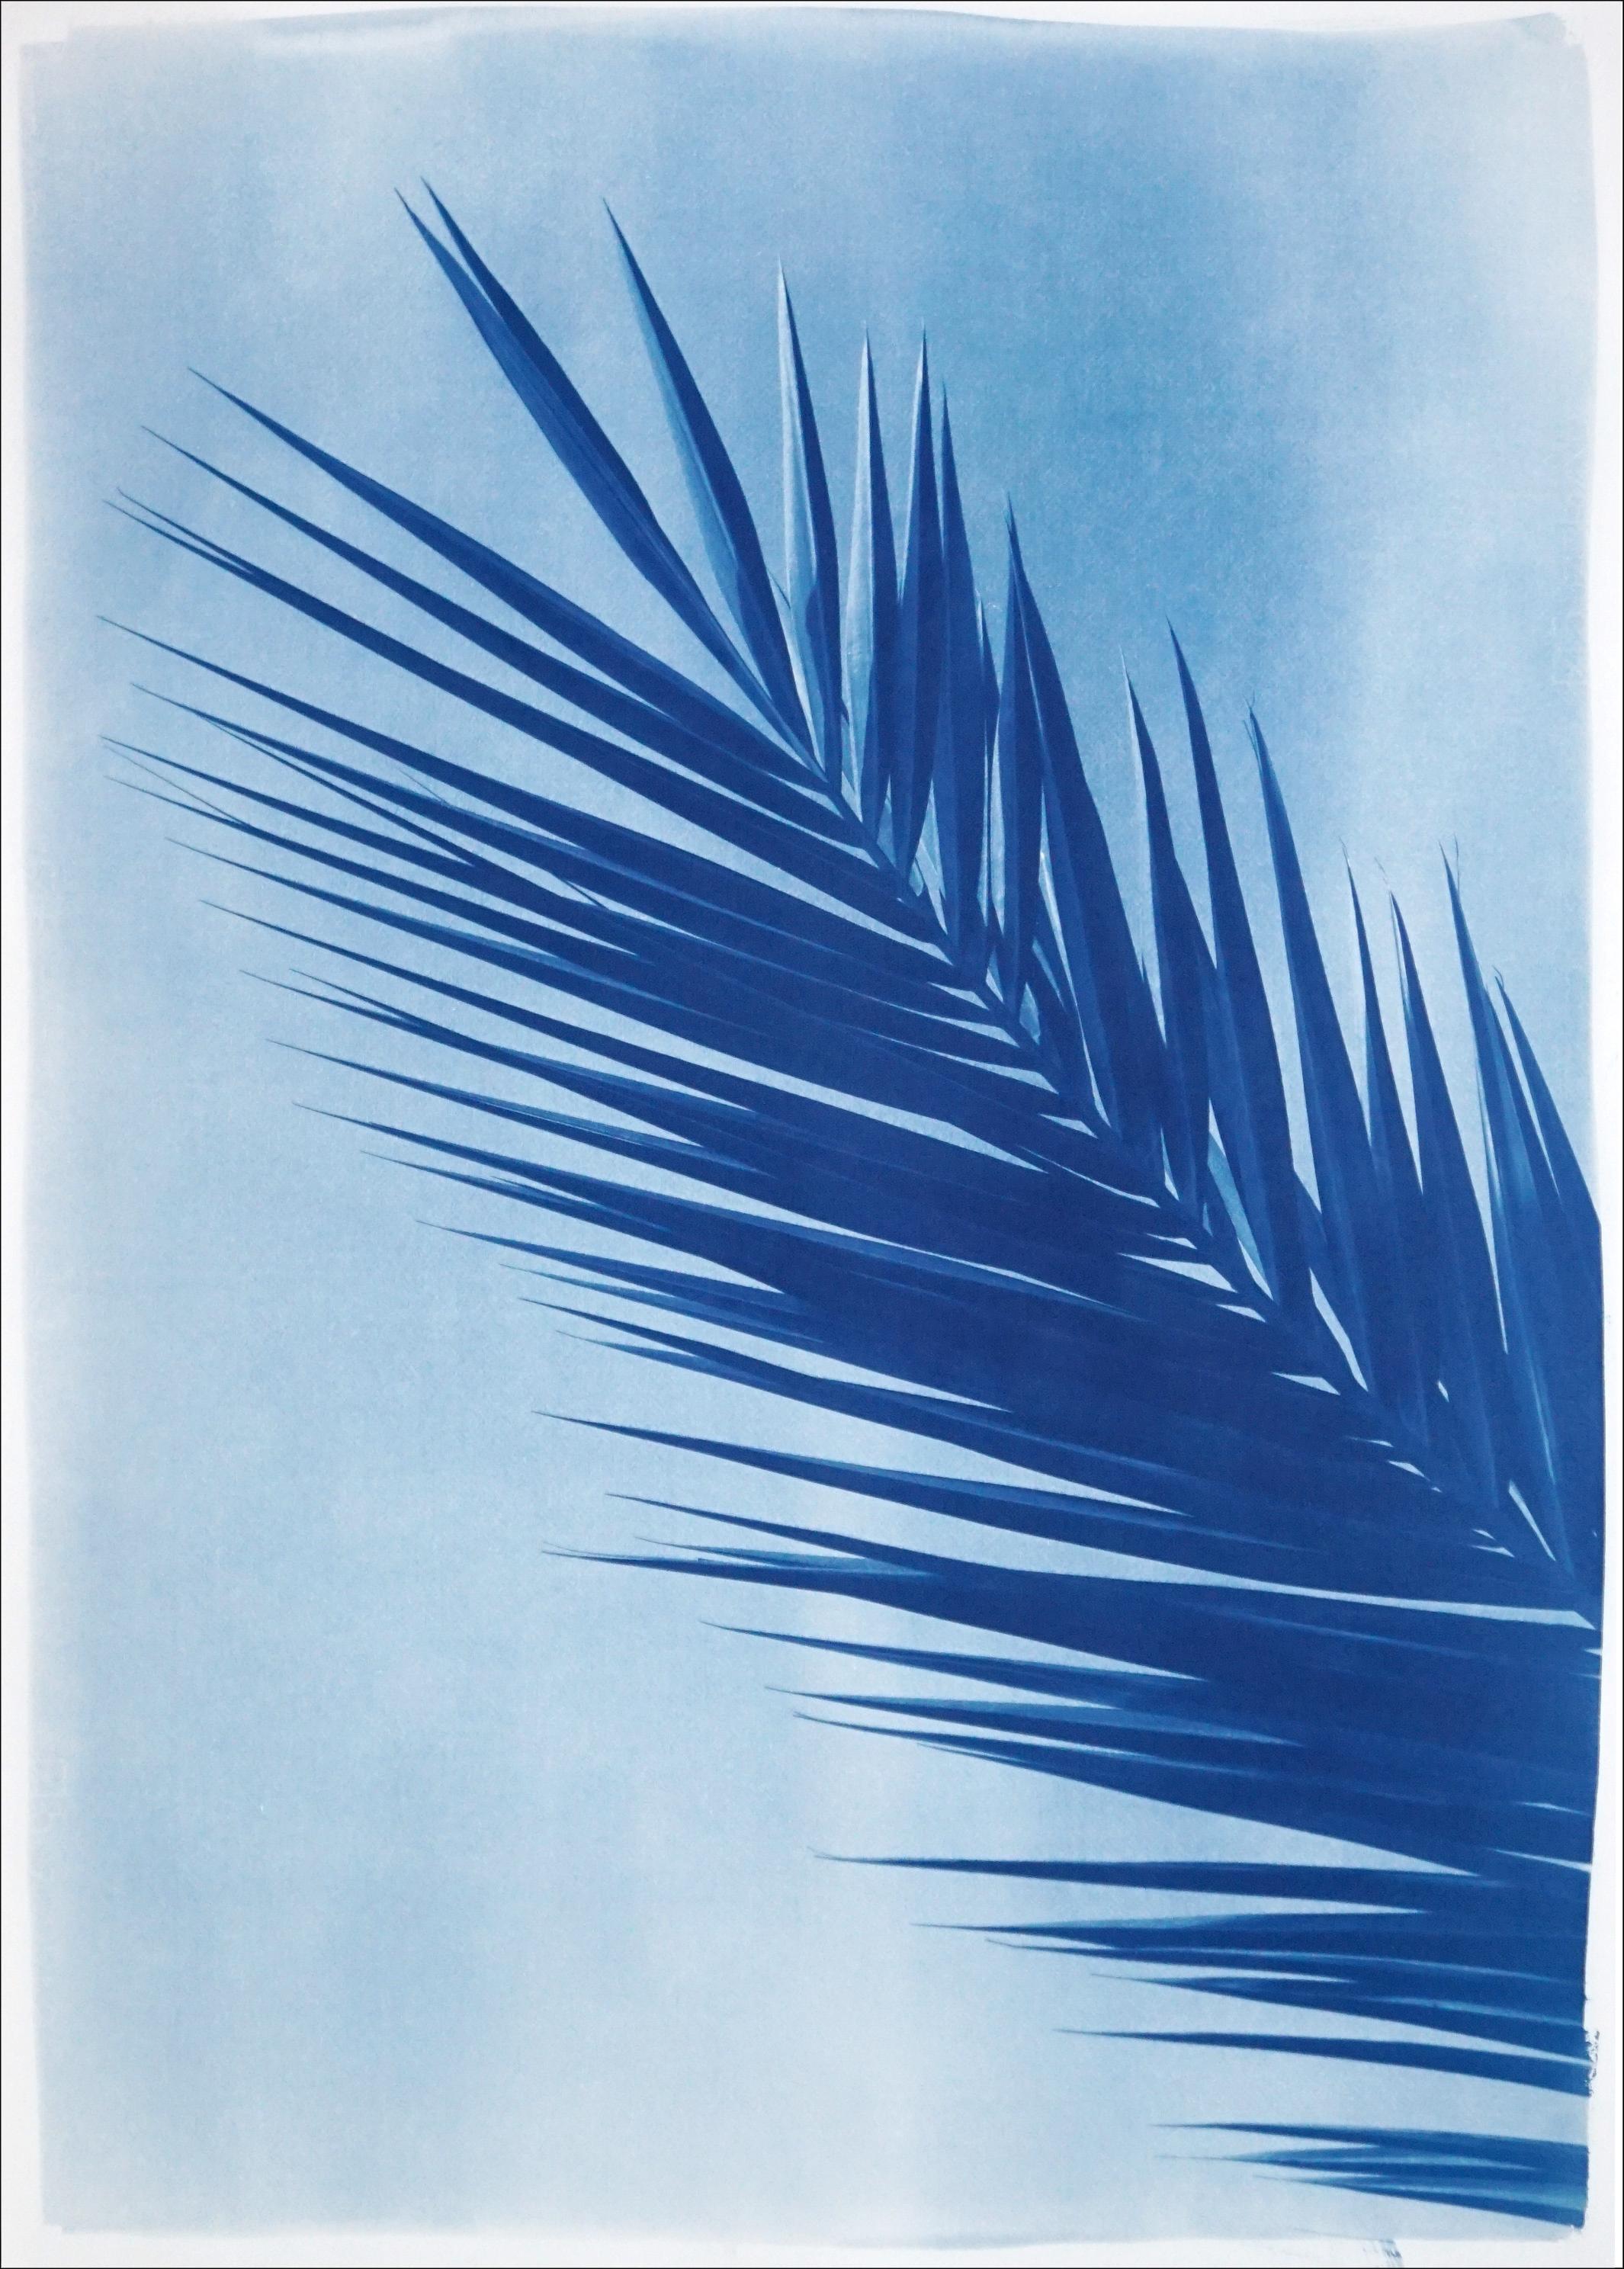 Il s'agit d'un cyanotype exclusif imprimé à la main en édition limitée d'une belle feuille de palmier.

Détails :
+ Titre : Feuille de palmier sur ciel bleu
+ Année : 2021
+ Taille de l'édition : 100
+ Tampon et certificat d'authenticité fournis
+